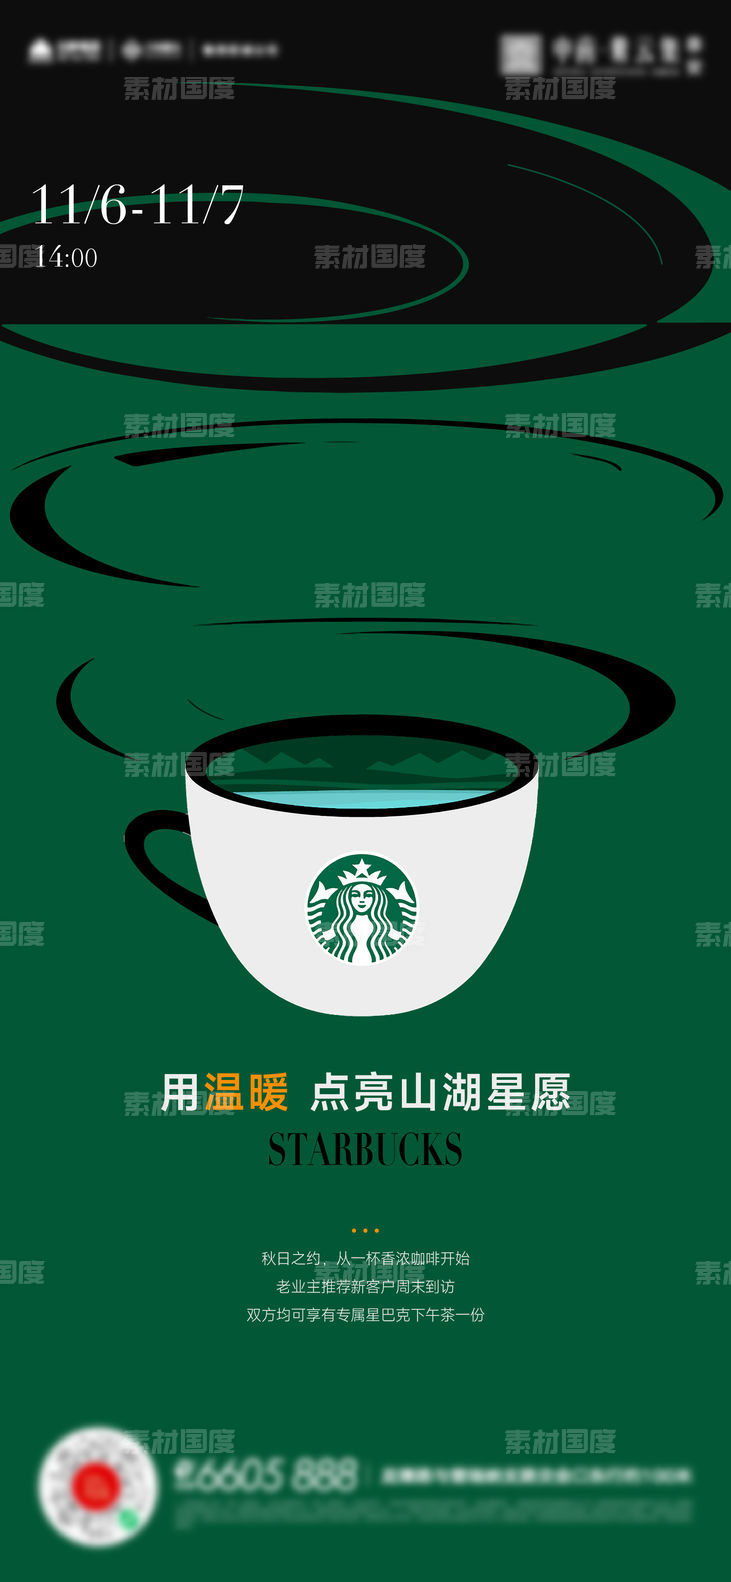 星巴克咖啡活动海报